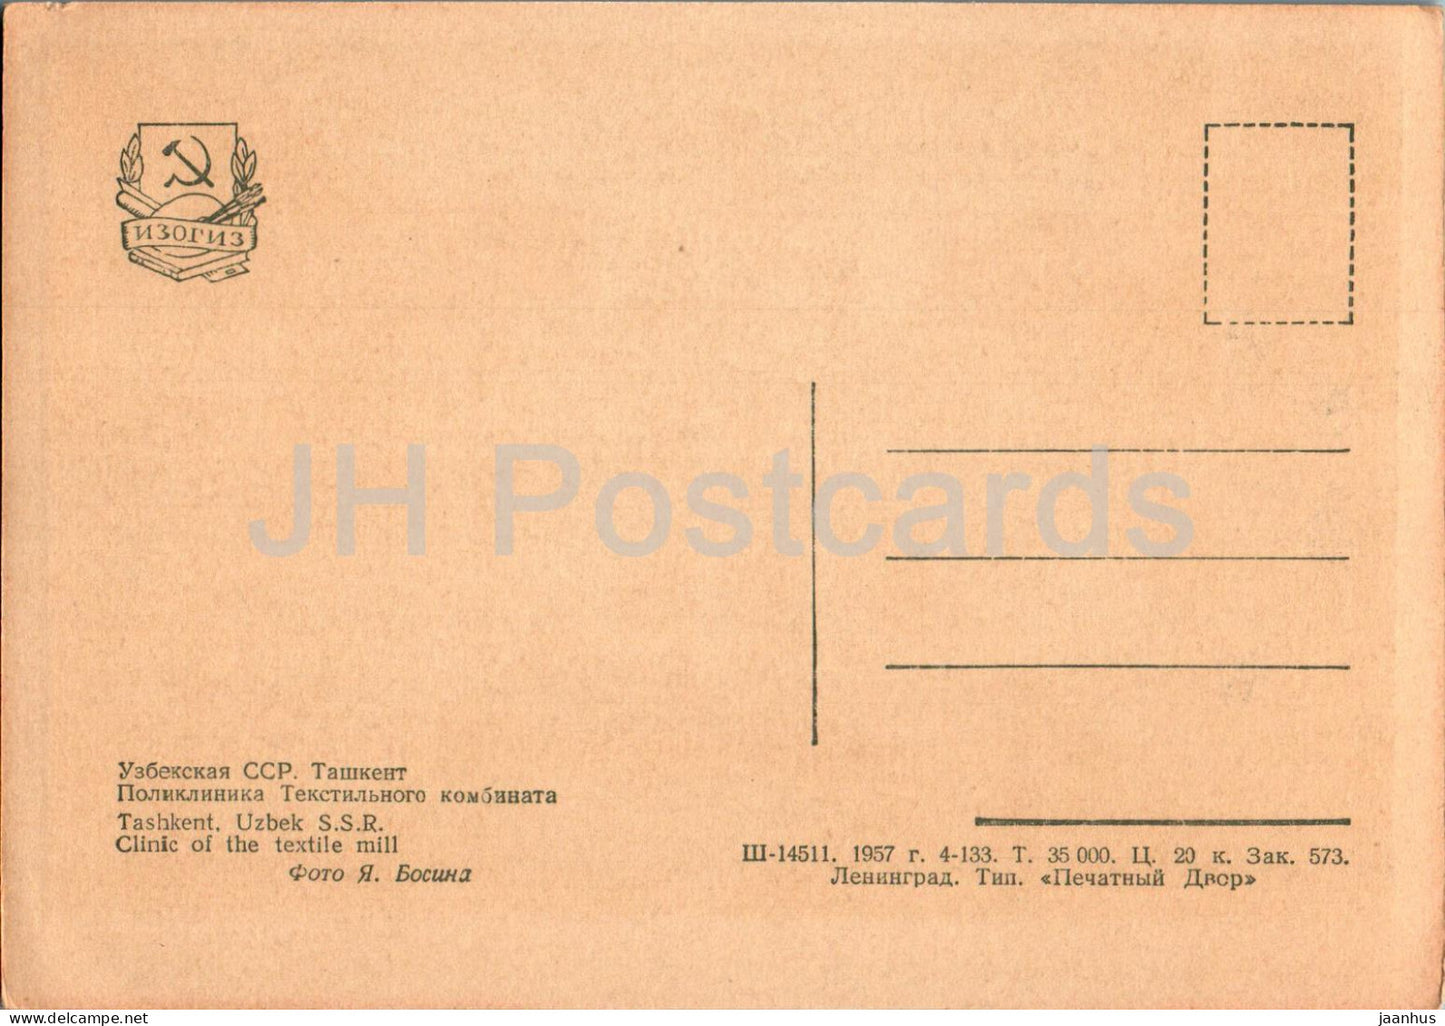 Tashkent - Clinic of the textile mill - old postcard - 1957 - Uzbekistan USSR - unused